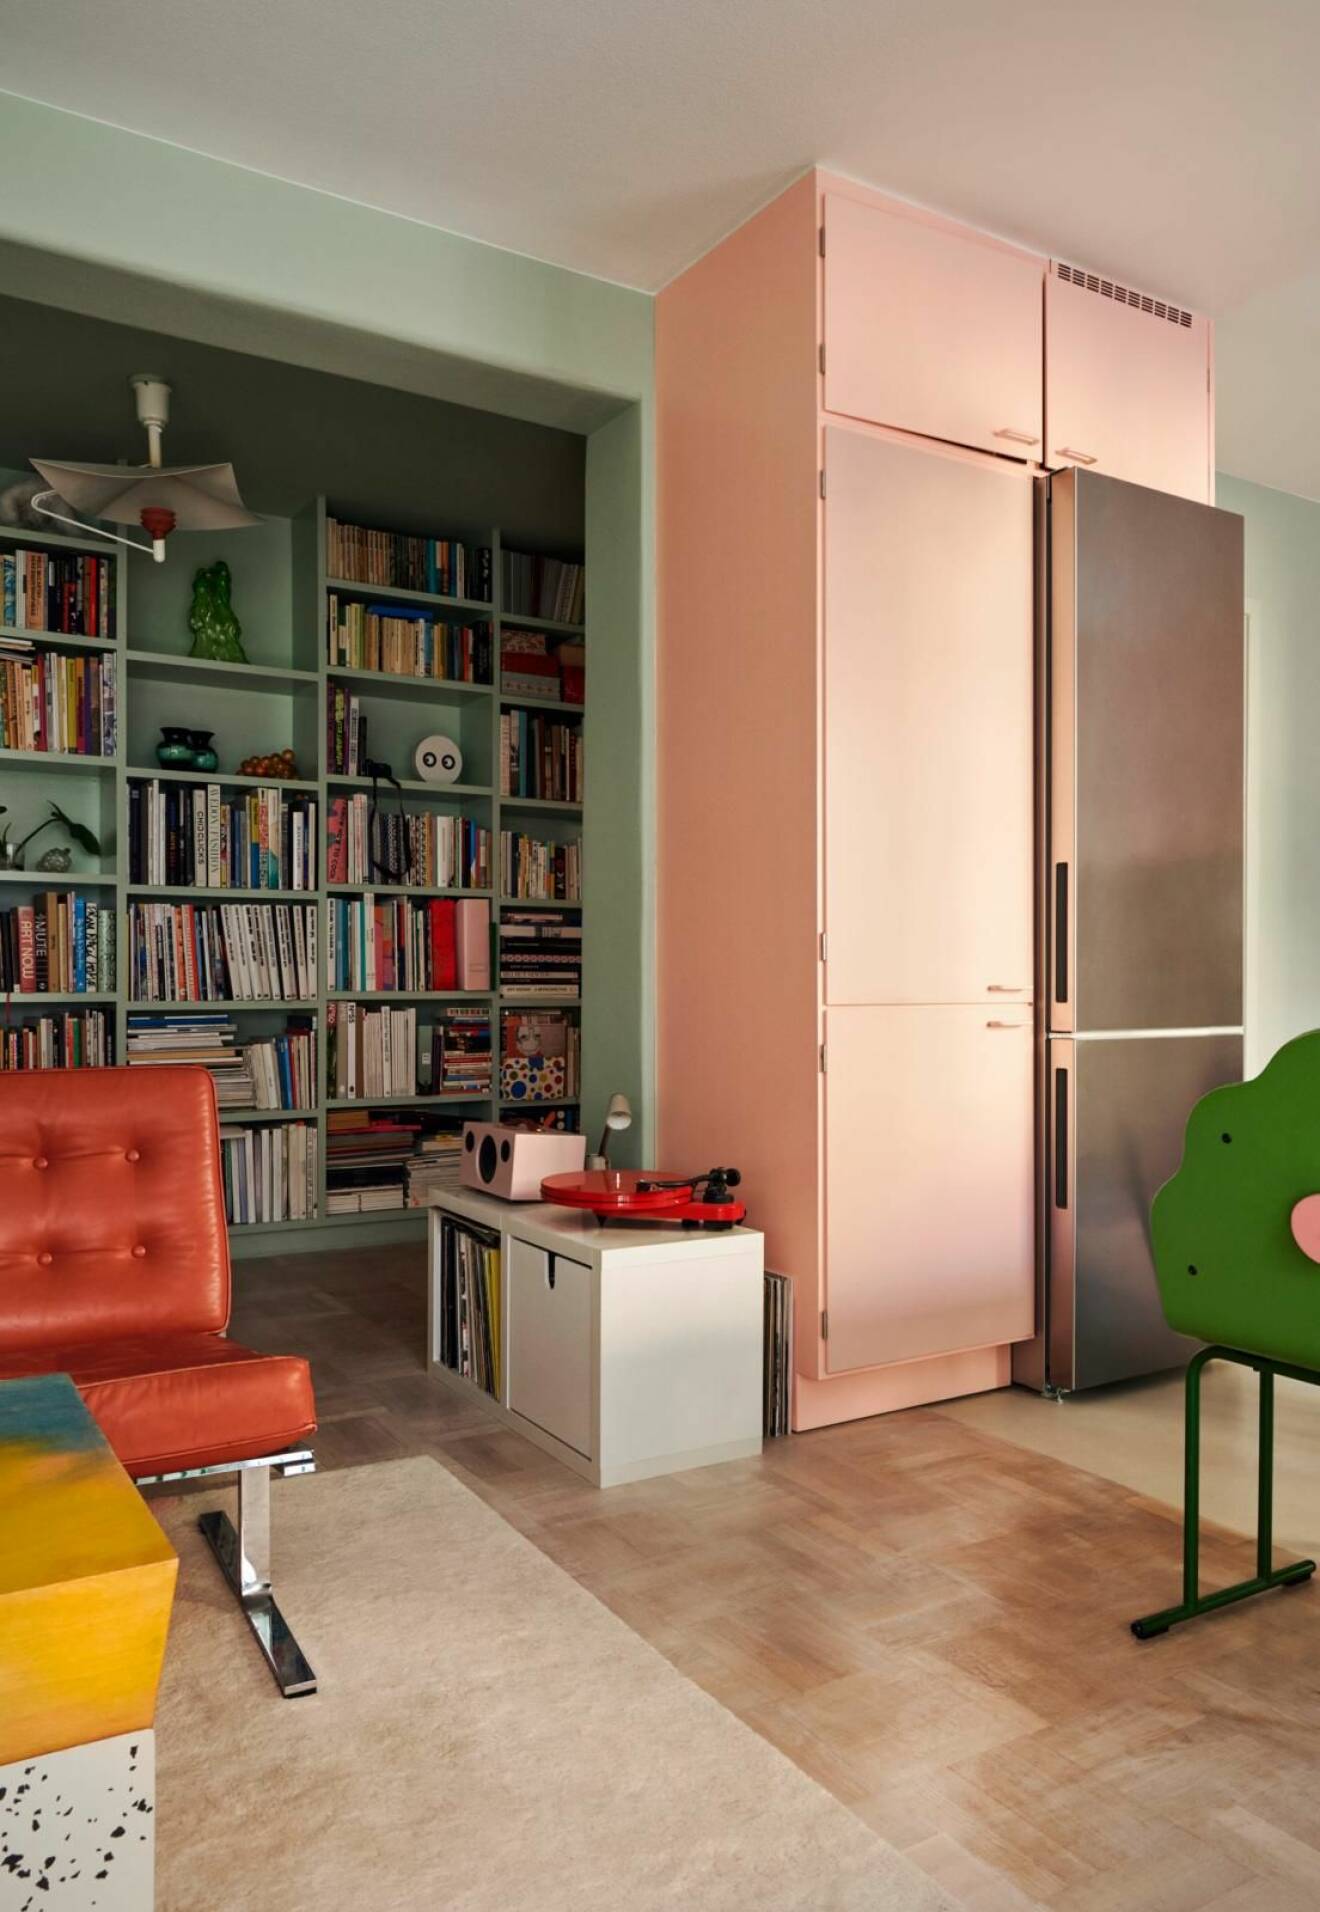 Kika in hos Emma och Dennis lekfulla och färgstarka lägenhet inred med pastellfärger på Södermalm, rosa kylskåp